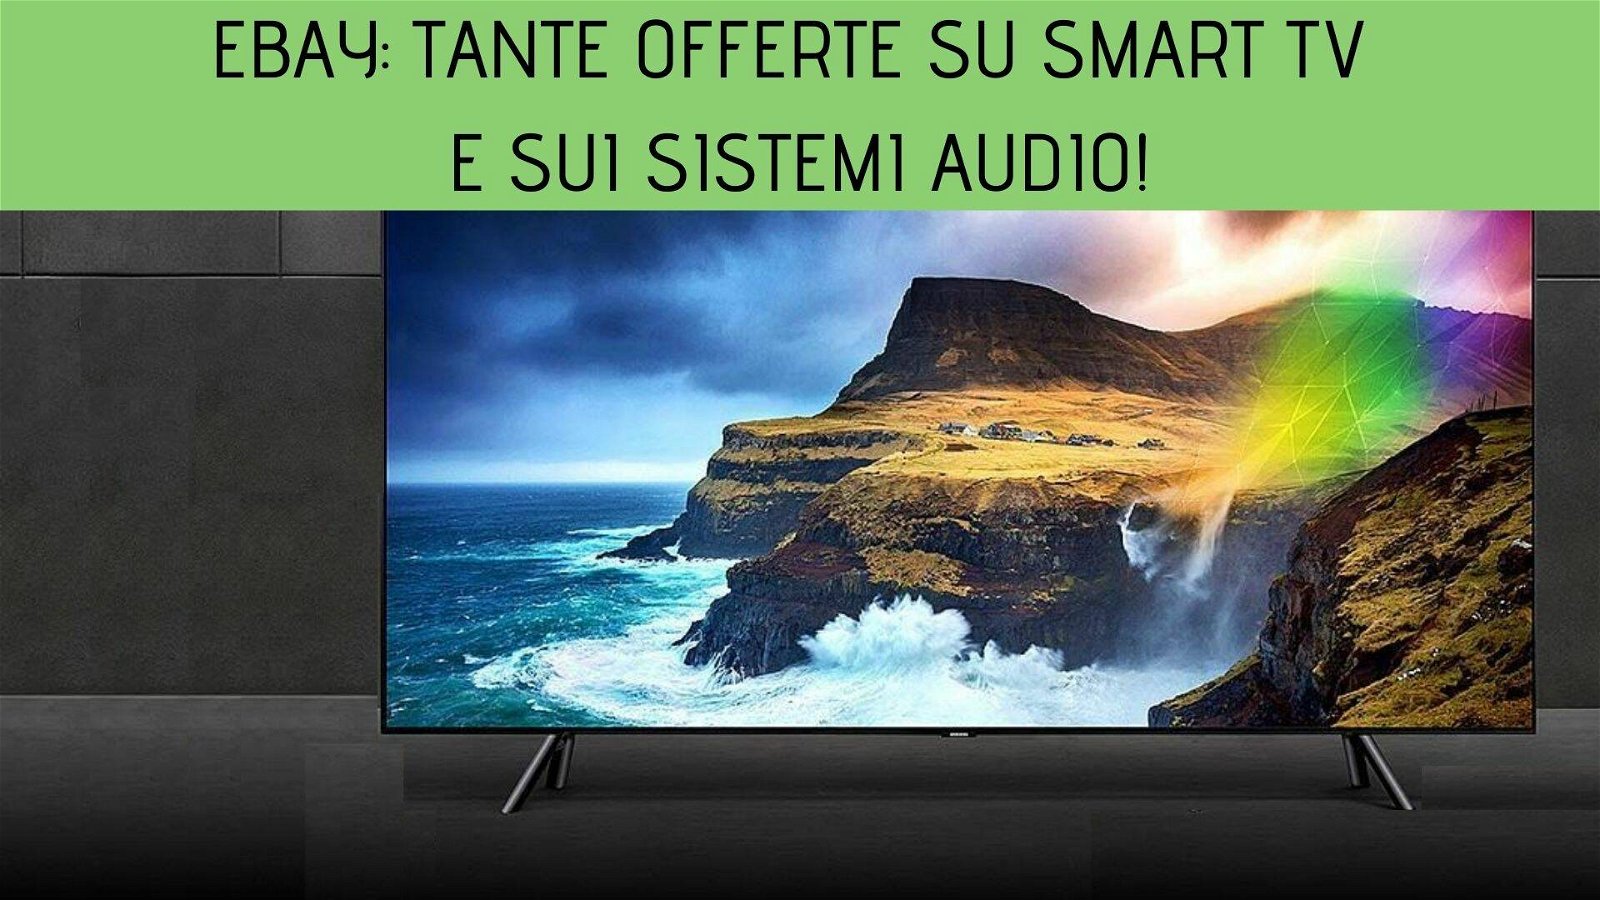 Immagine di eBay: tante offerte su smart TV e sistemi audio!